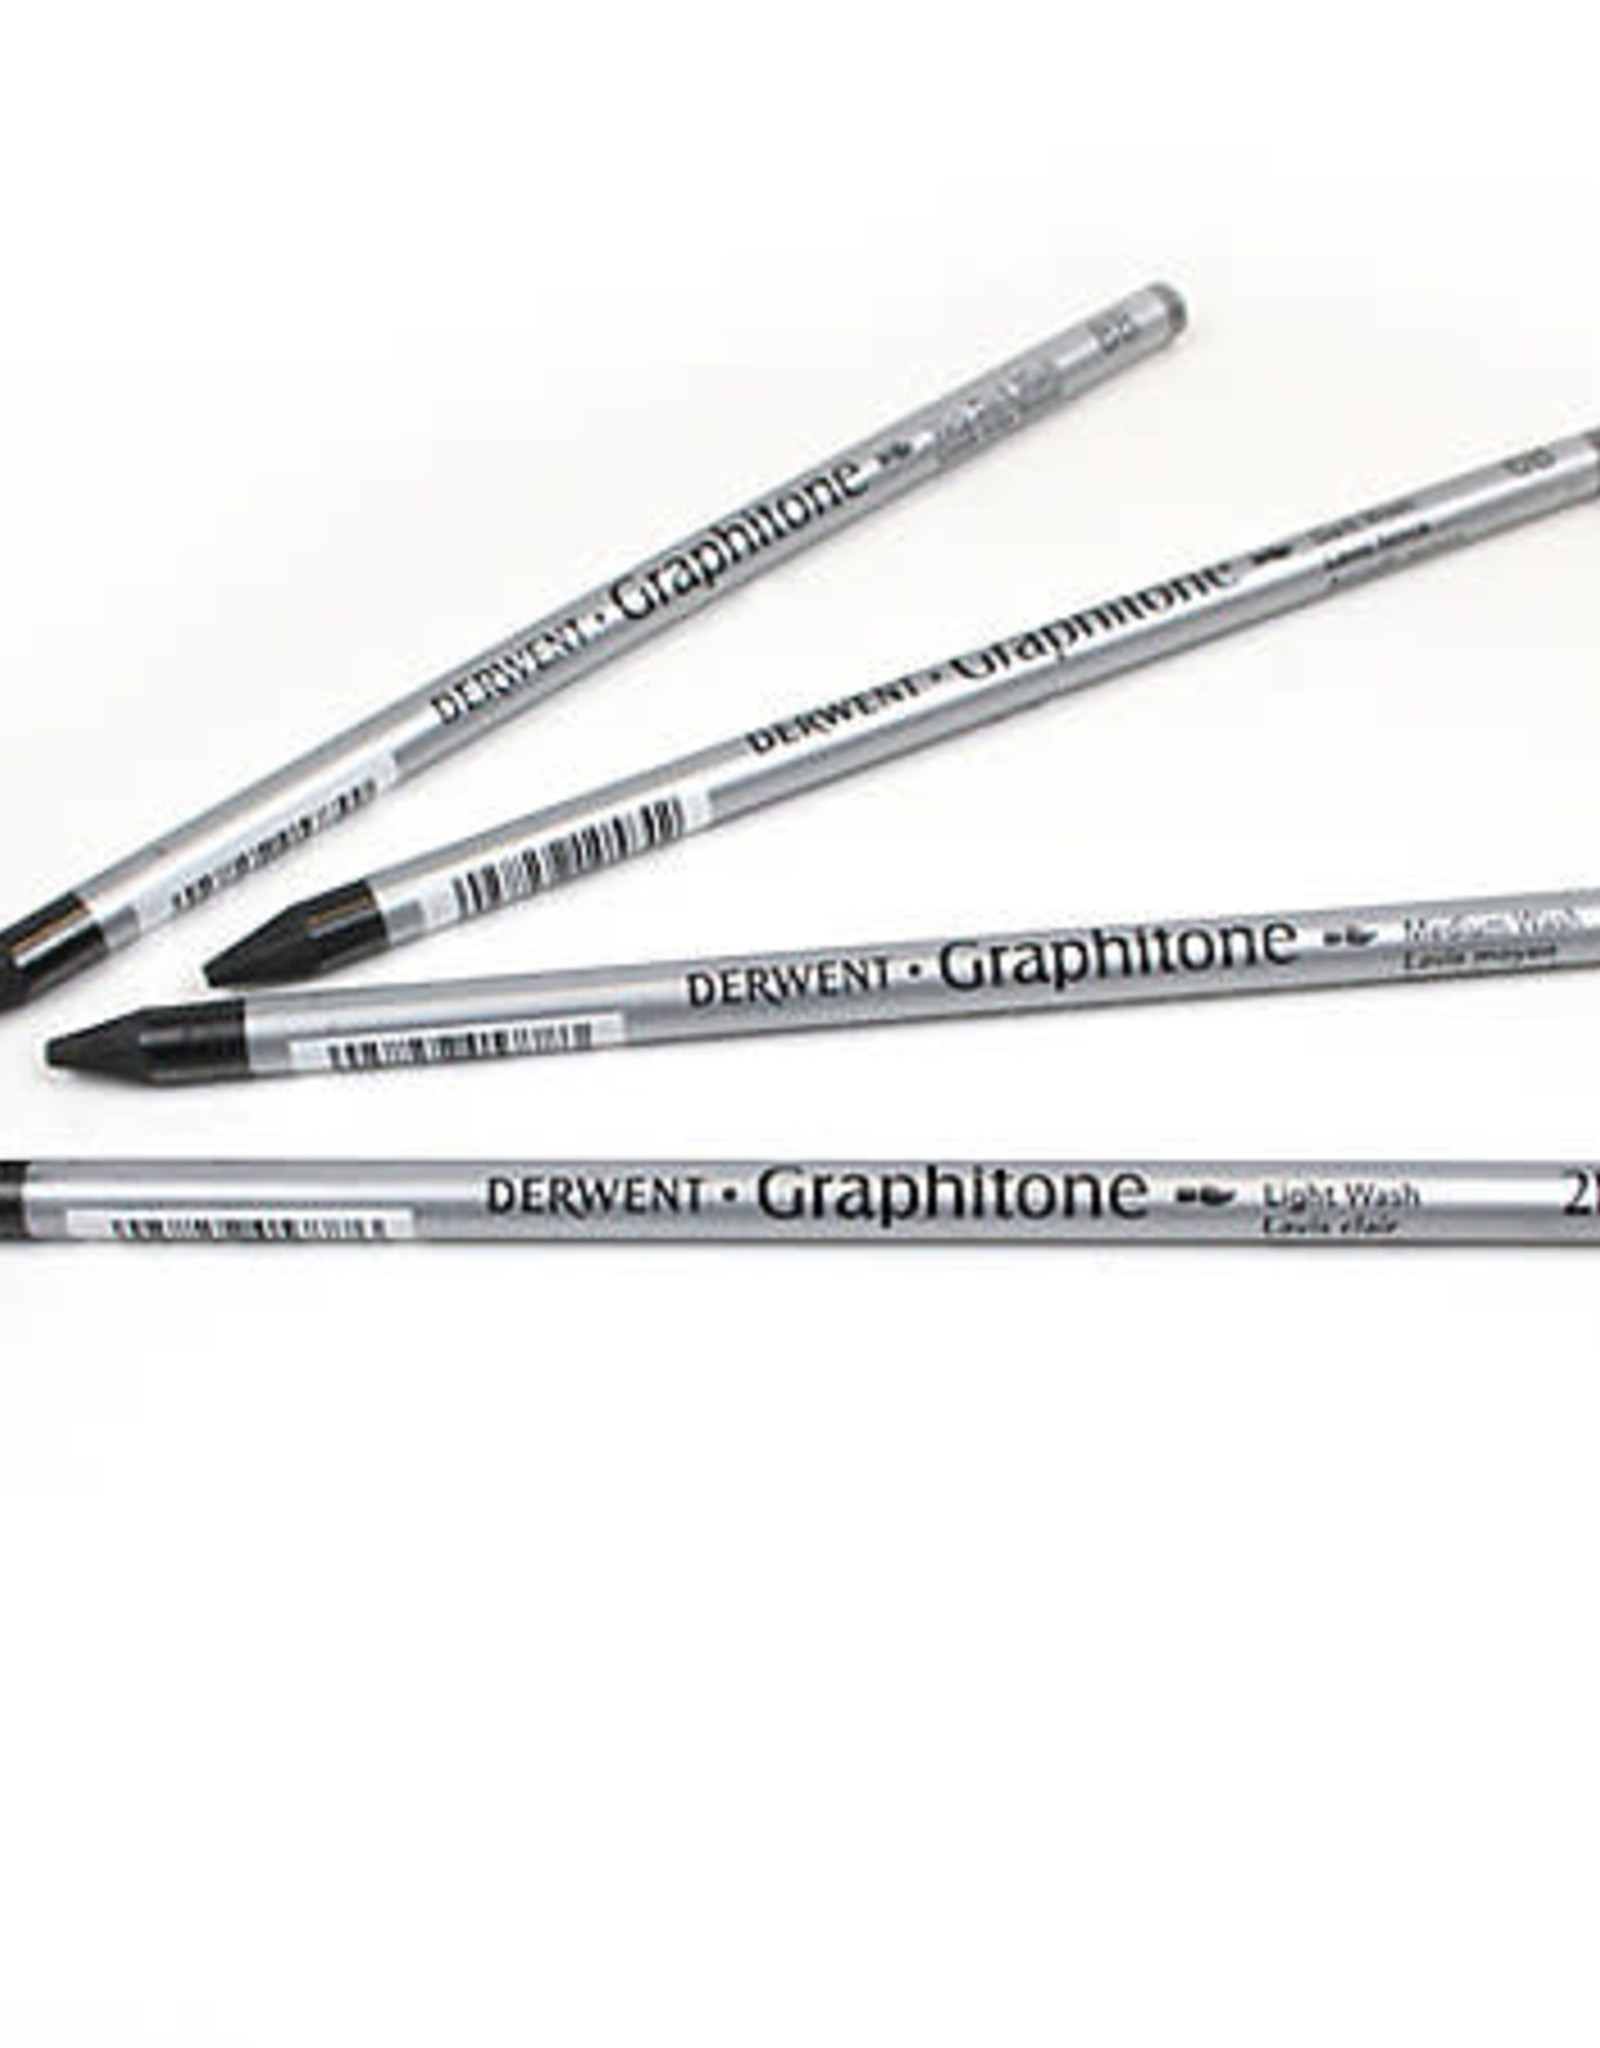 Derwent Derwent Graphitone Pencil